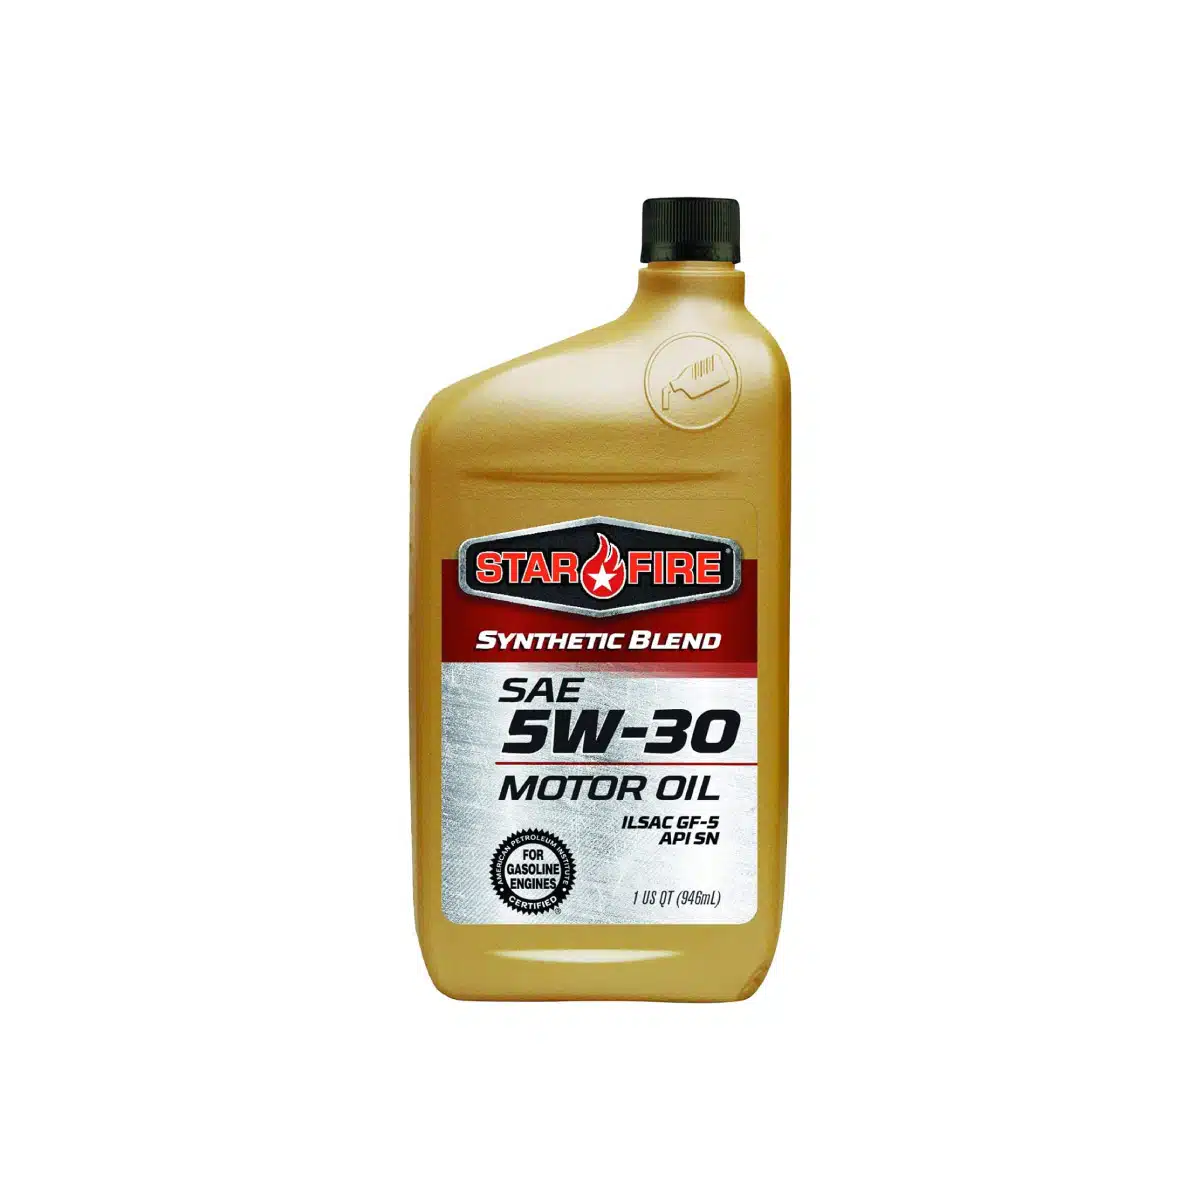 Case of Quarts Motor oil 5W-30